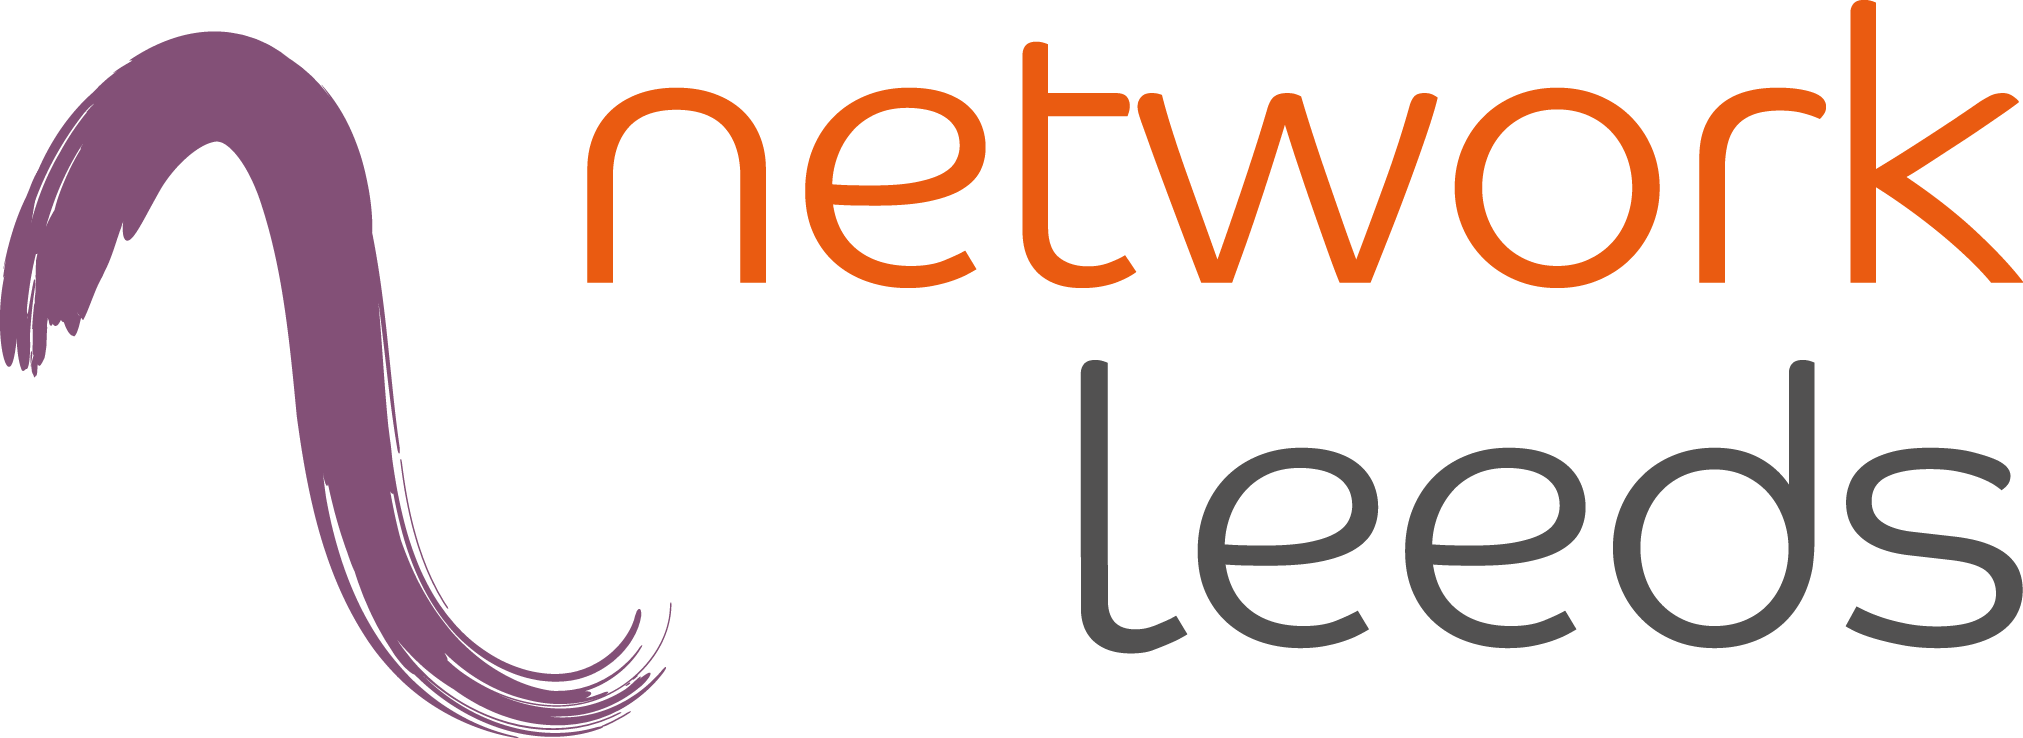 Network Leeds